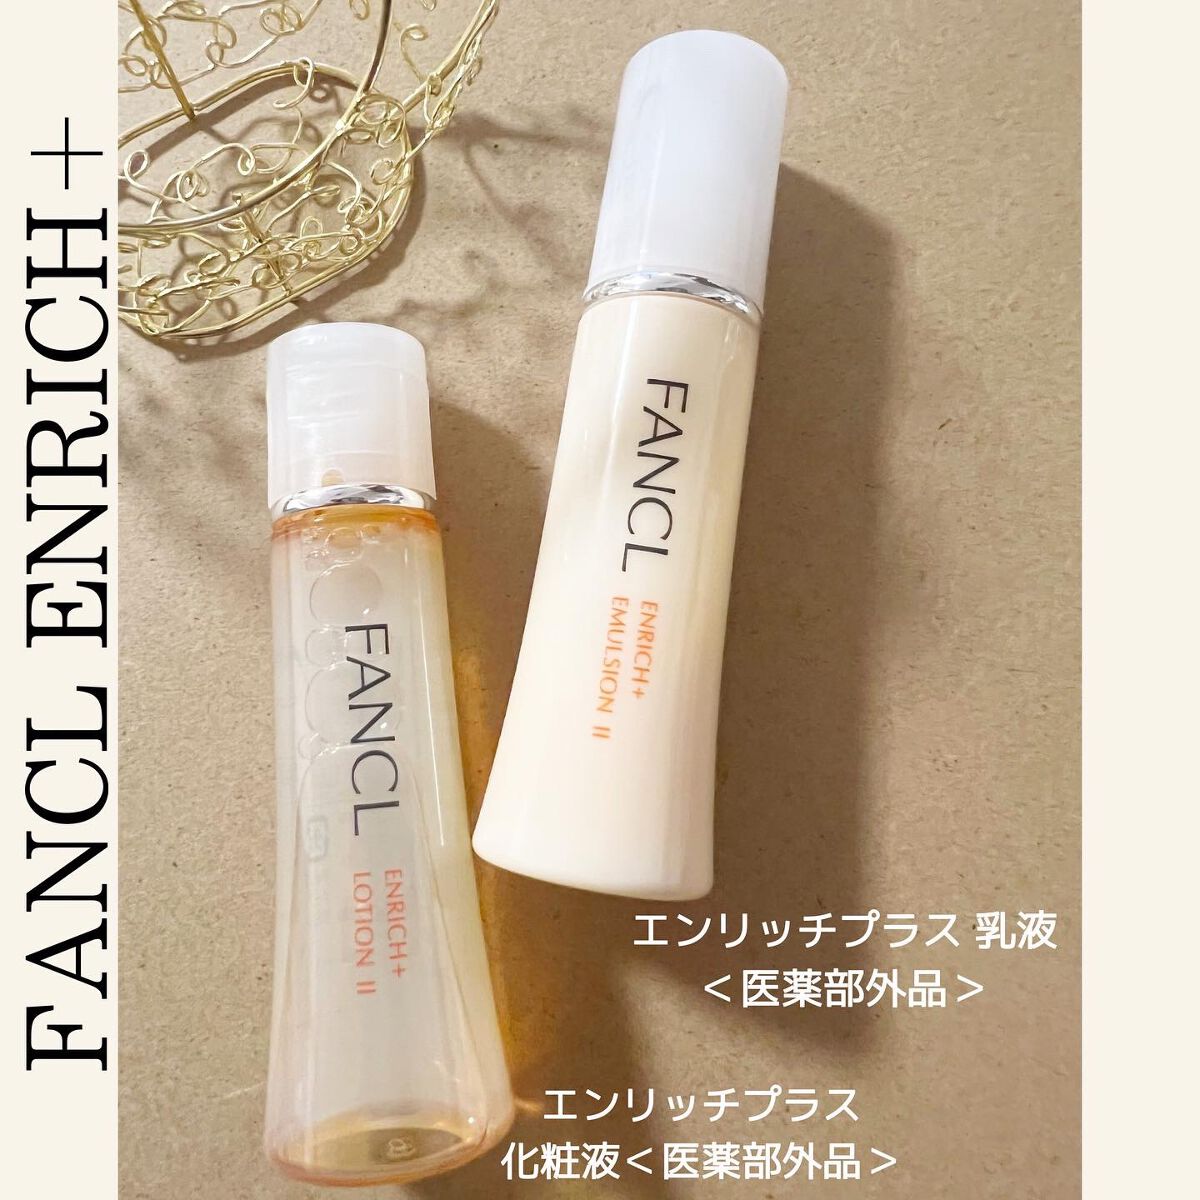 ファンケル エンリッチプラス 化粧液 II しっとり(30ml)